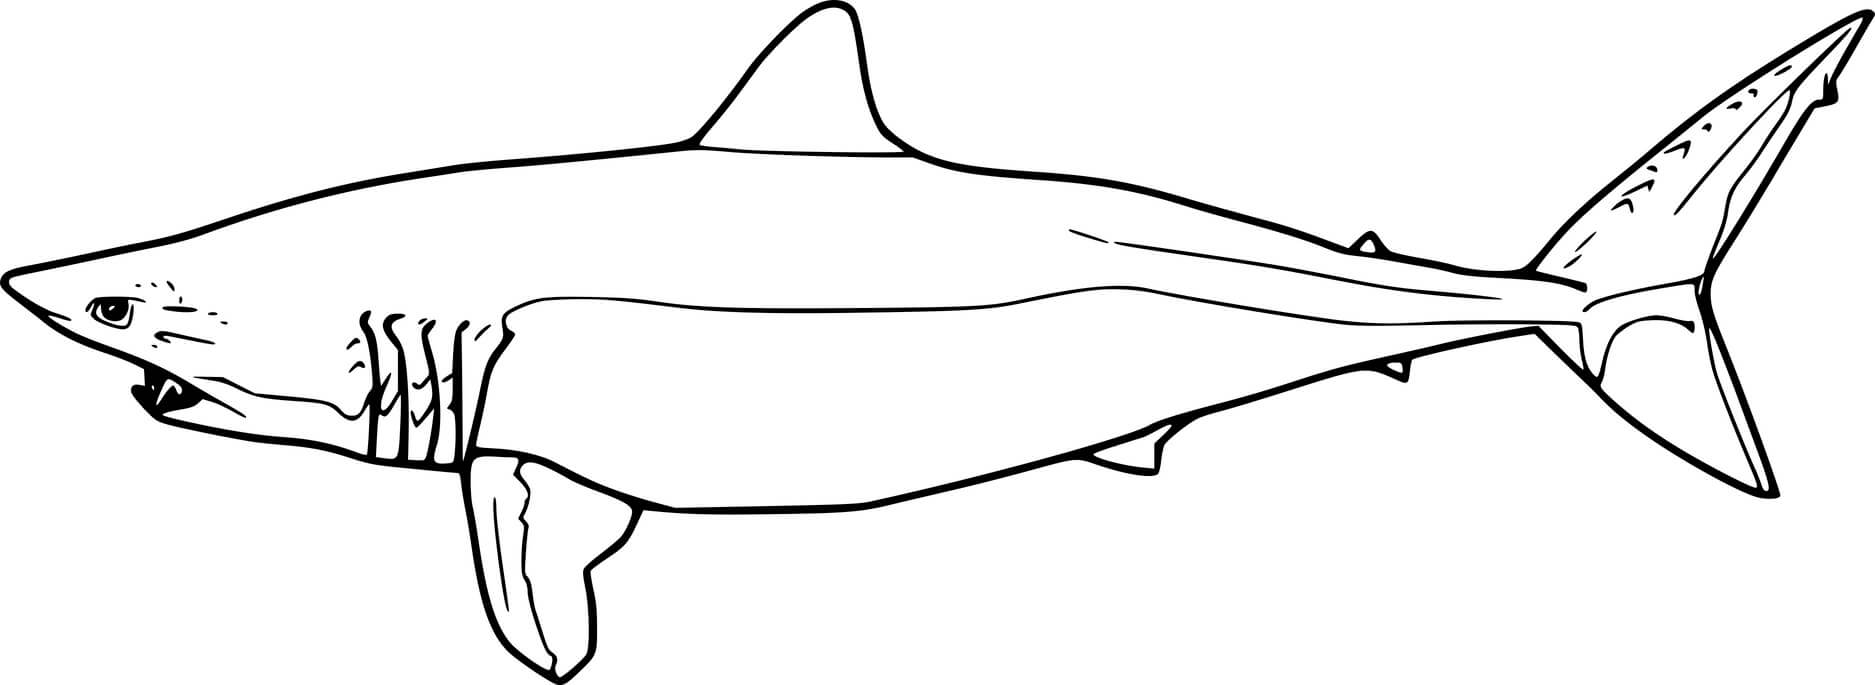 Shortfin Mako Shark Coloring Page